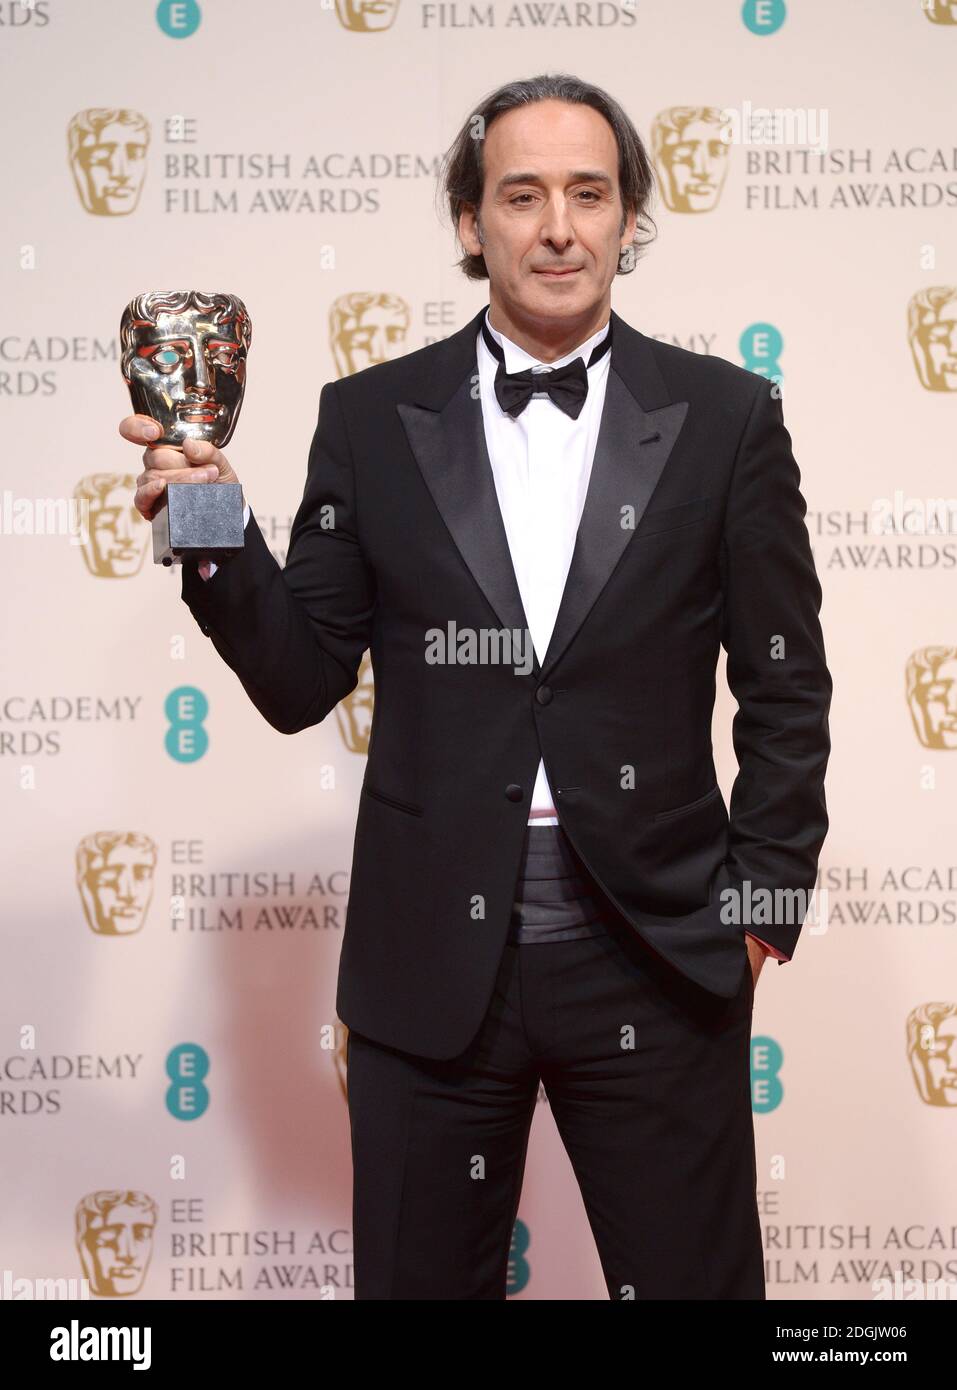 Alexandre Desplat ha vinto il premio originale per la musica per il "Grand Budapest Hotel" nella Sala Stampa dell'EE British Academy Film Awards 2015 che si è tenuto presso la Royal Opera House di Covent Garden, Londra UK. Foto Stock